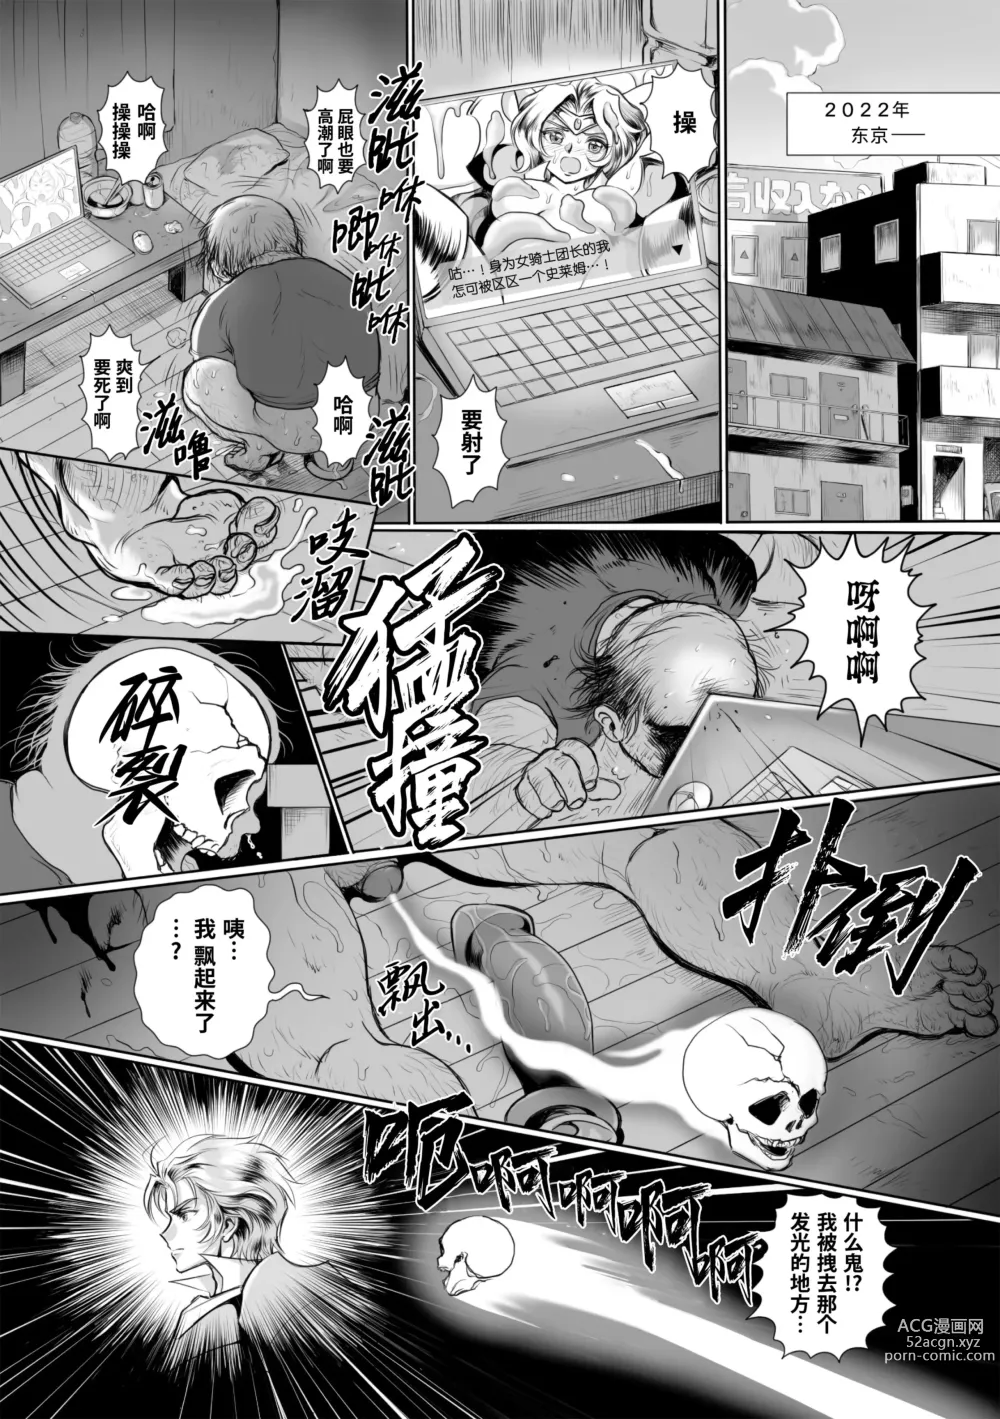 Page 5 of manga  附身奸骑士 斯塔里昂 被恶心男夺取意识凄惨高潮! (decensored)